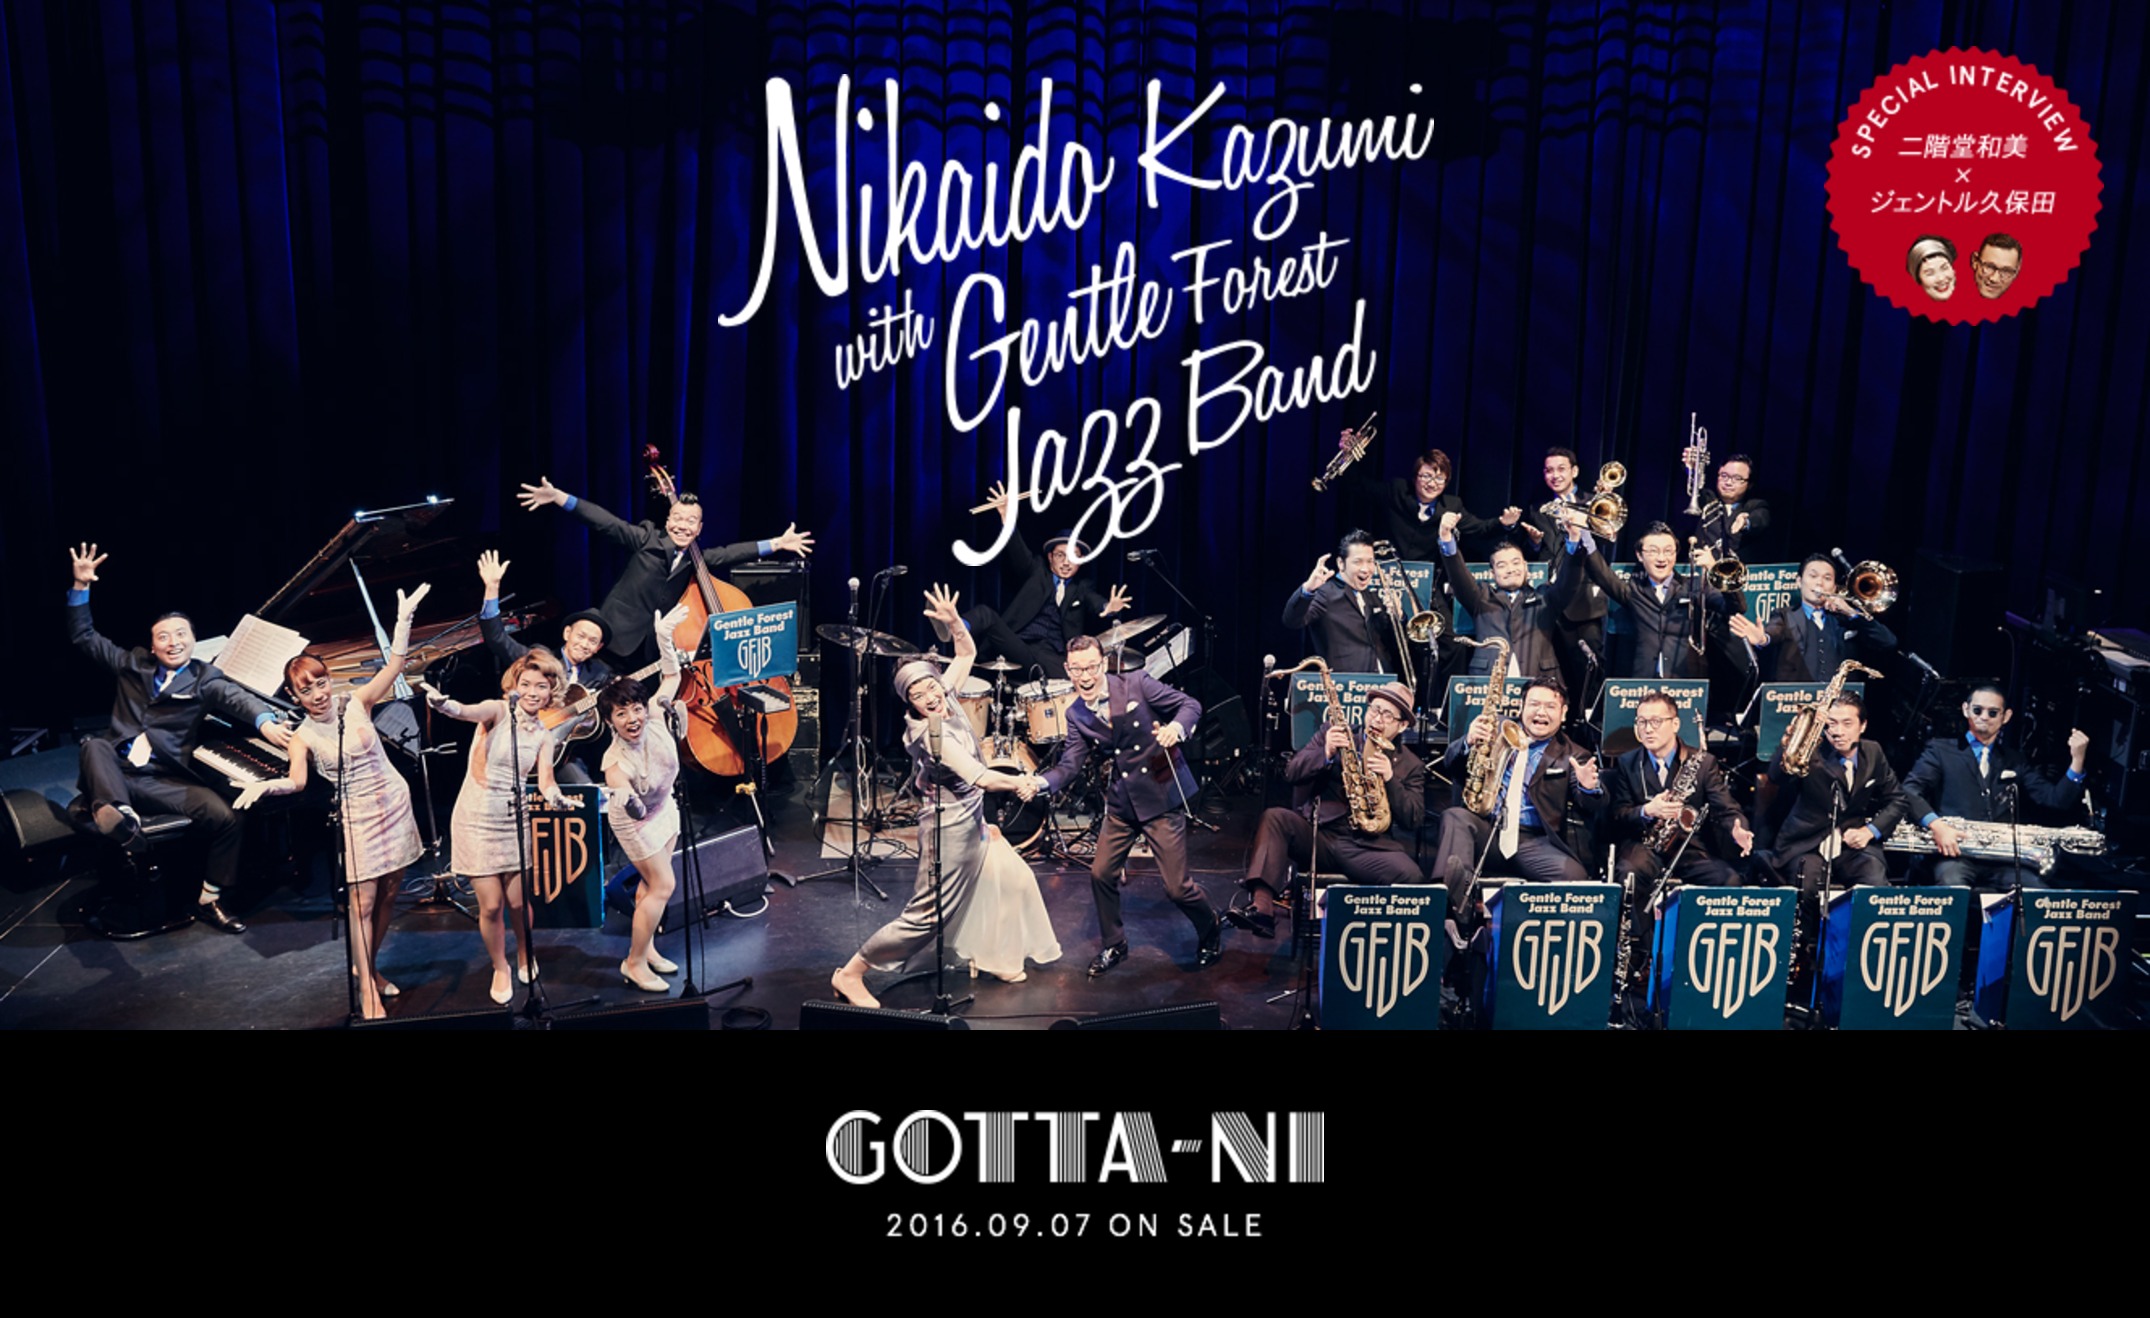 二階堂和美 with Gentle Forest Jazz Band『GOTTA-NI』特設サイト